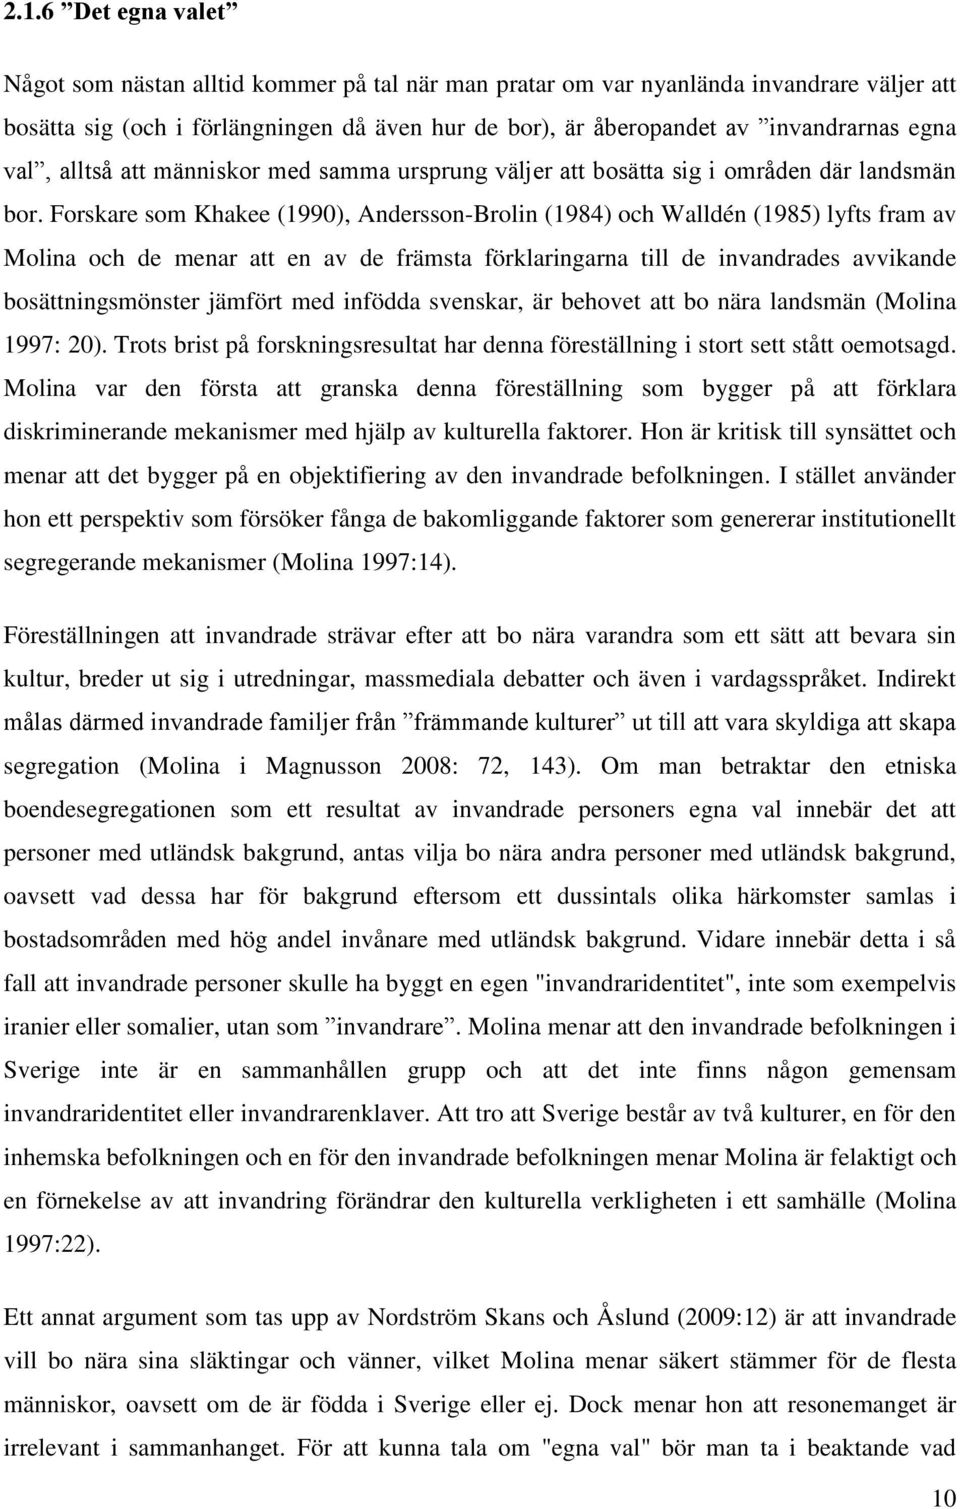 Forskare som Khakee (1990), Andersson-Brolin (1984) och Walldén (1985) lyfts fram av Molina och de menar att en av de främsta förklaringarna till de invandrades avvikande bosättningsmönster jämfört